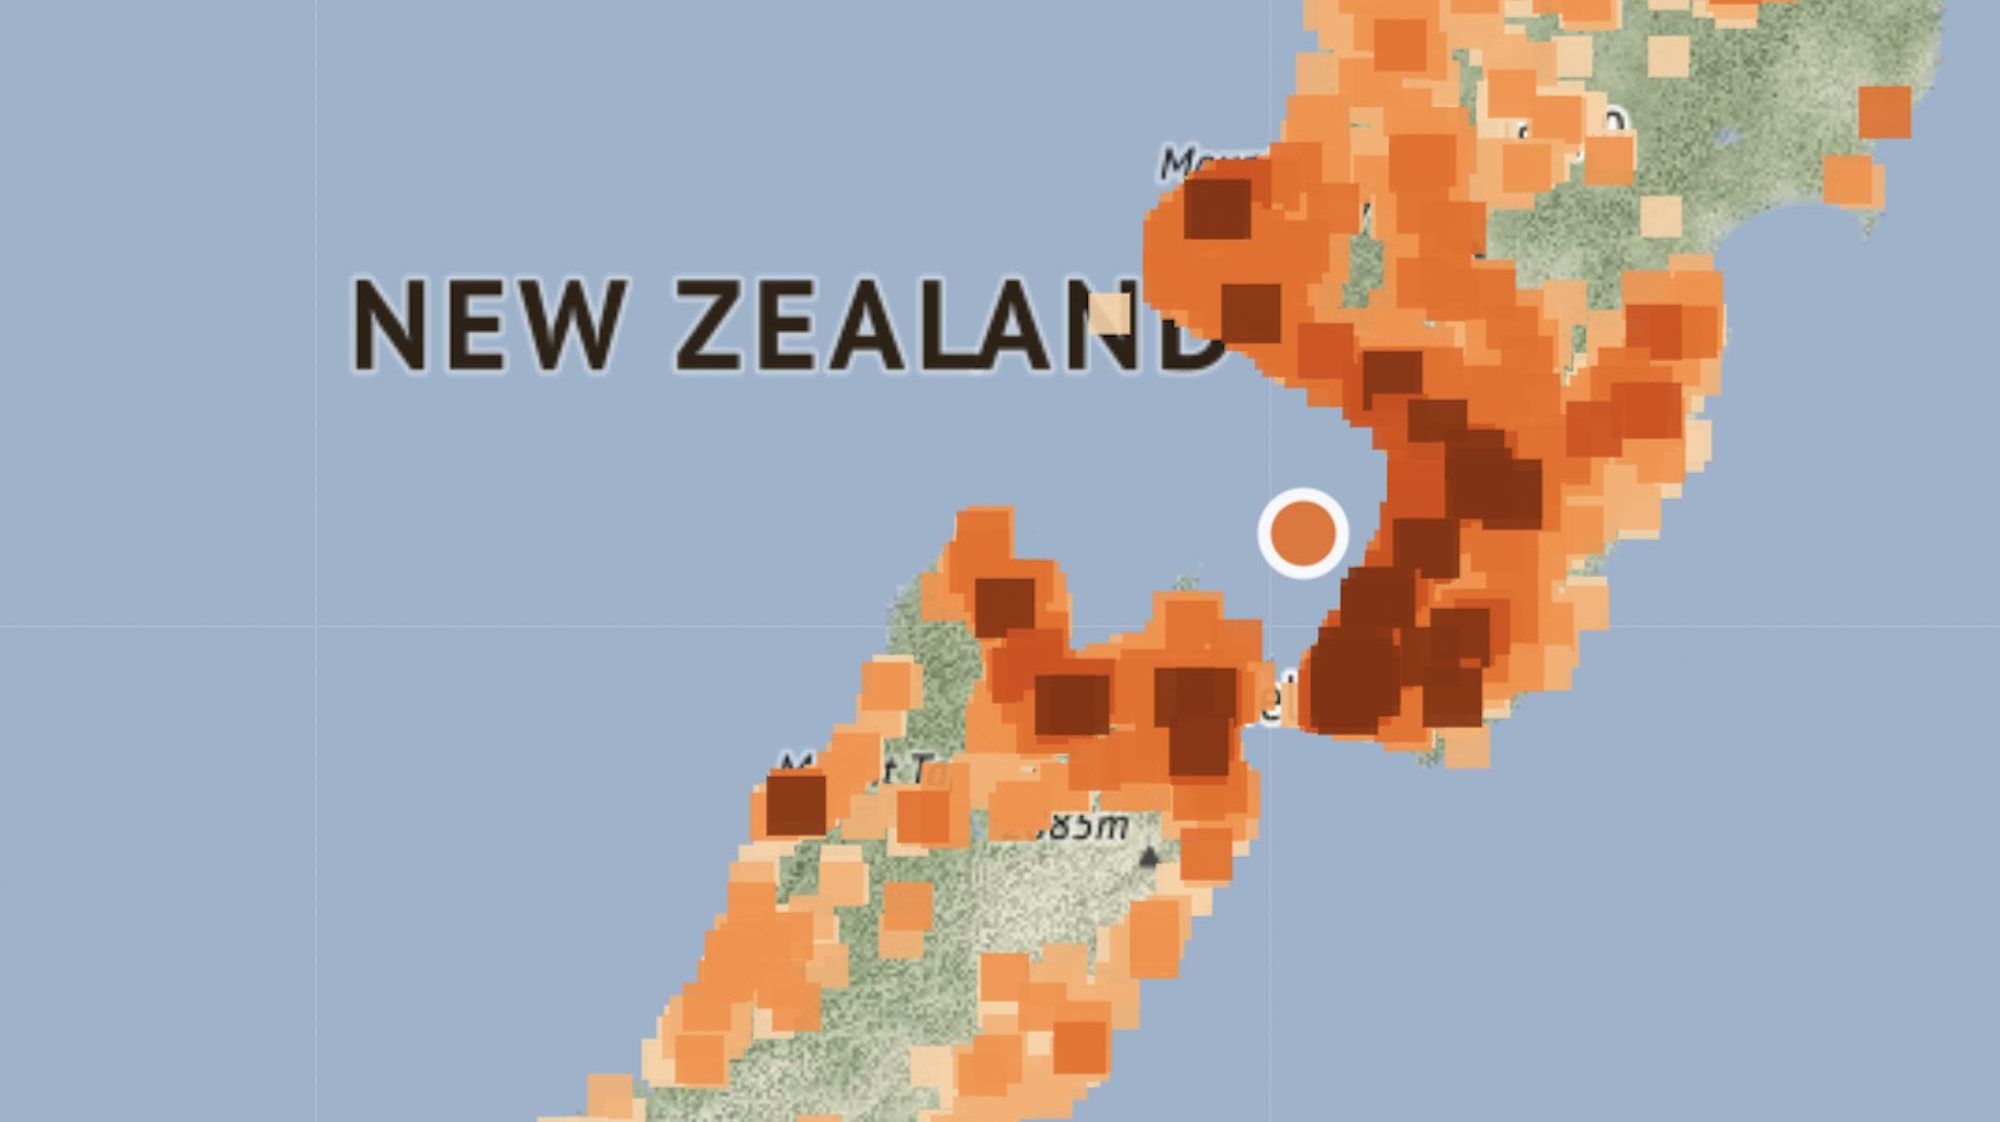 Imagem retirada do site Geonet, o monitor sísmico governamental da Nova Zelândia